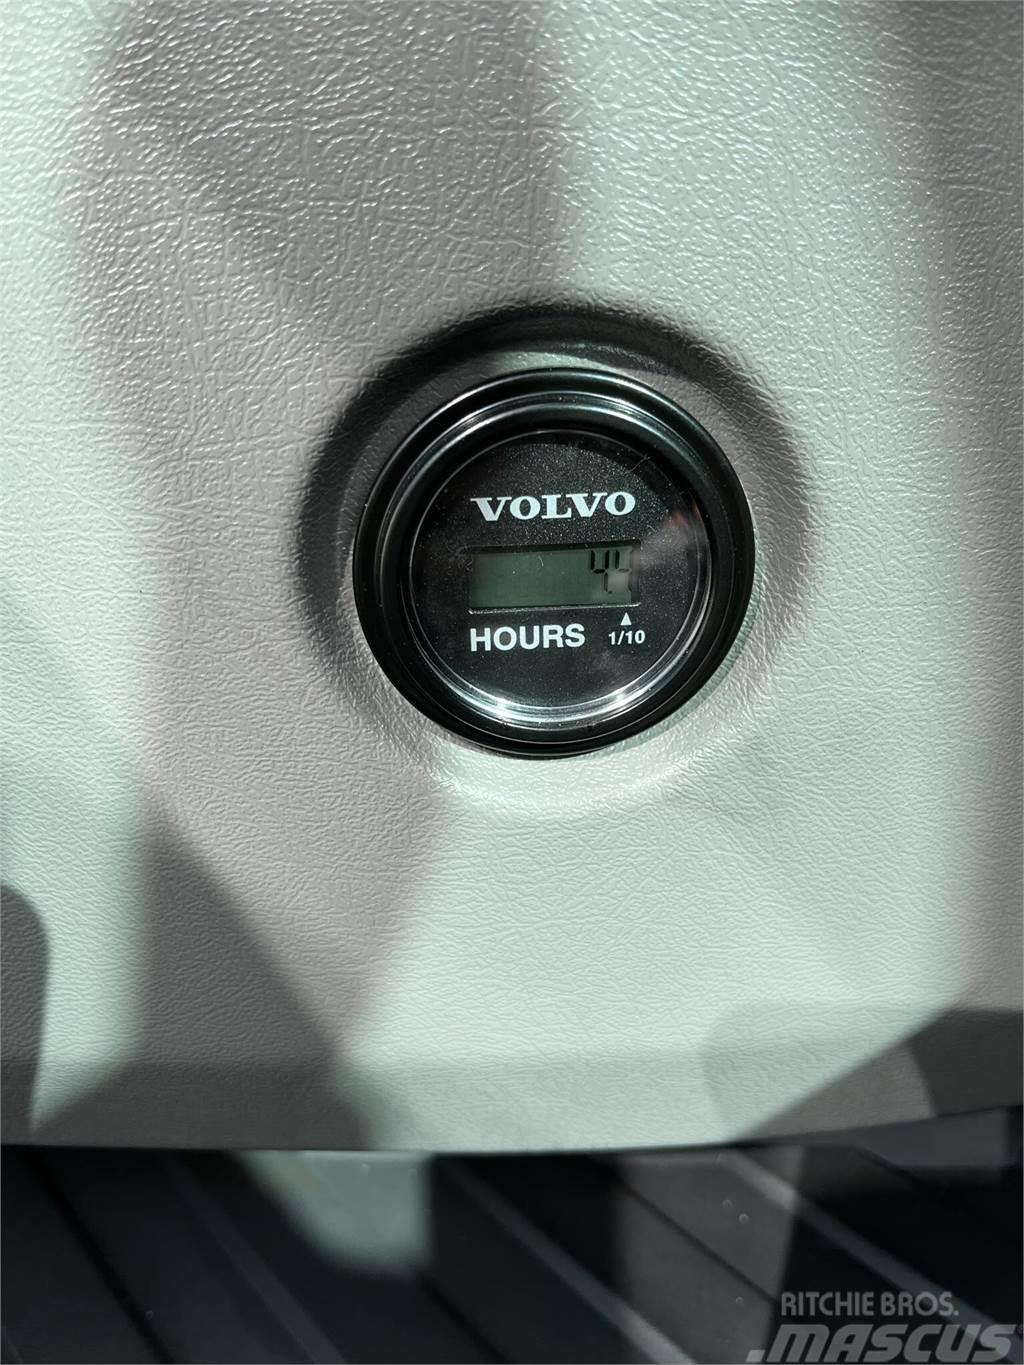 Volvo ECR88D Roomikekskavaatorid